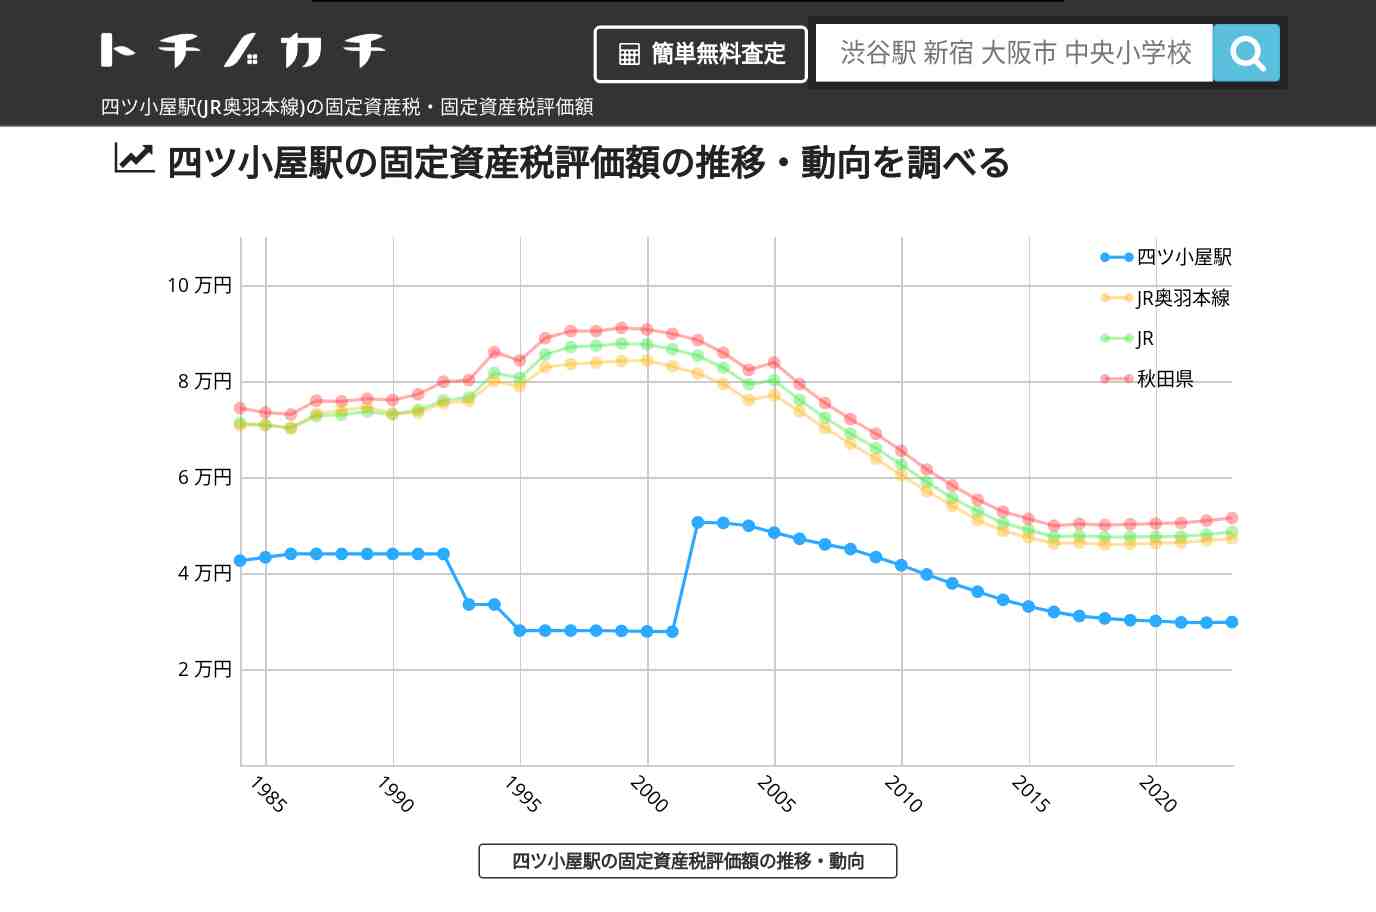 四ツ小屋駅(JR奥羽本線)の固定資産税・固定資産税評価額 | トチノカチ